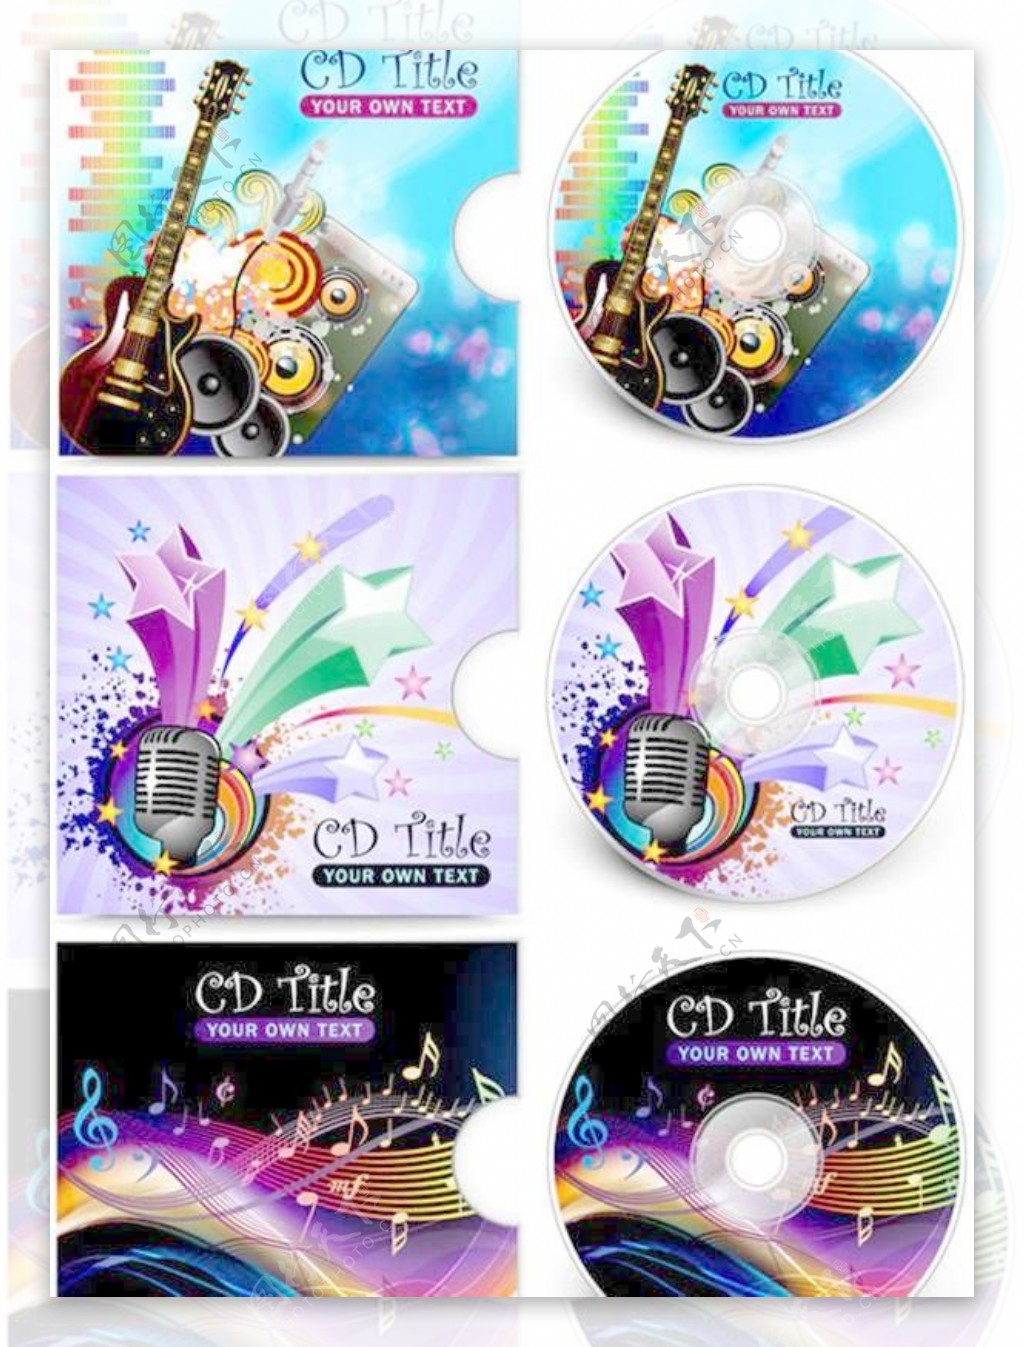 炫目潮流CD包装设计矢量素材